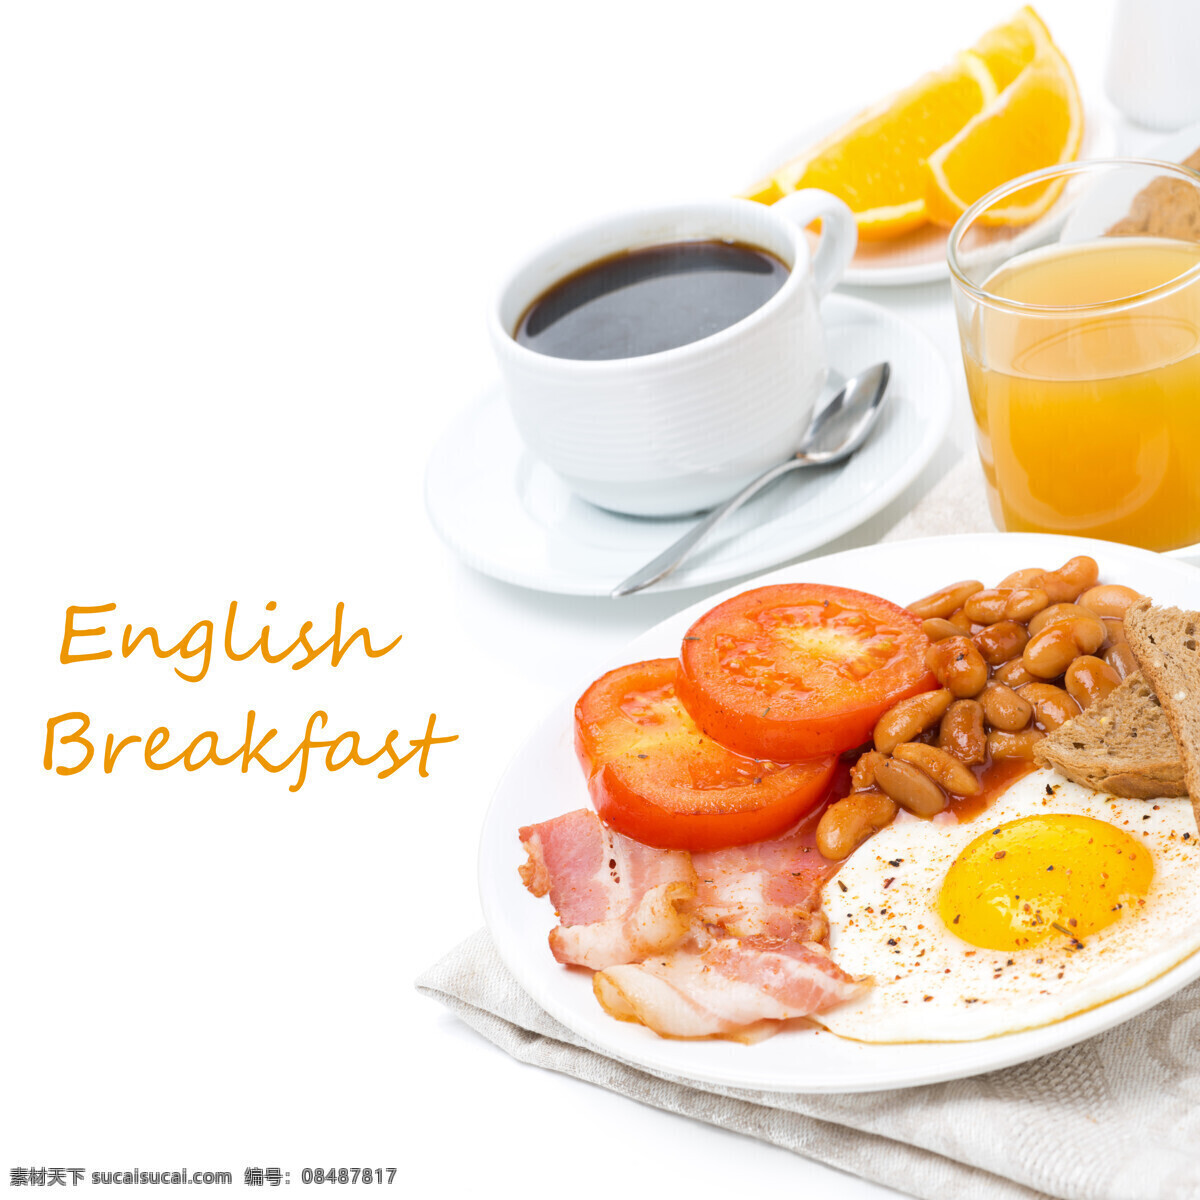 营养 丰富 早餐 鸡蛋 西红柿 食物原料 食材 食物摄影 外国美食 餐饮美食 美食图片